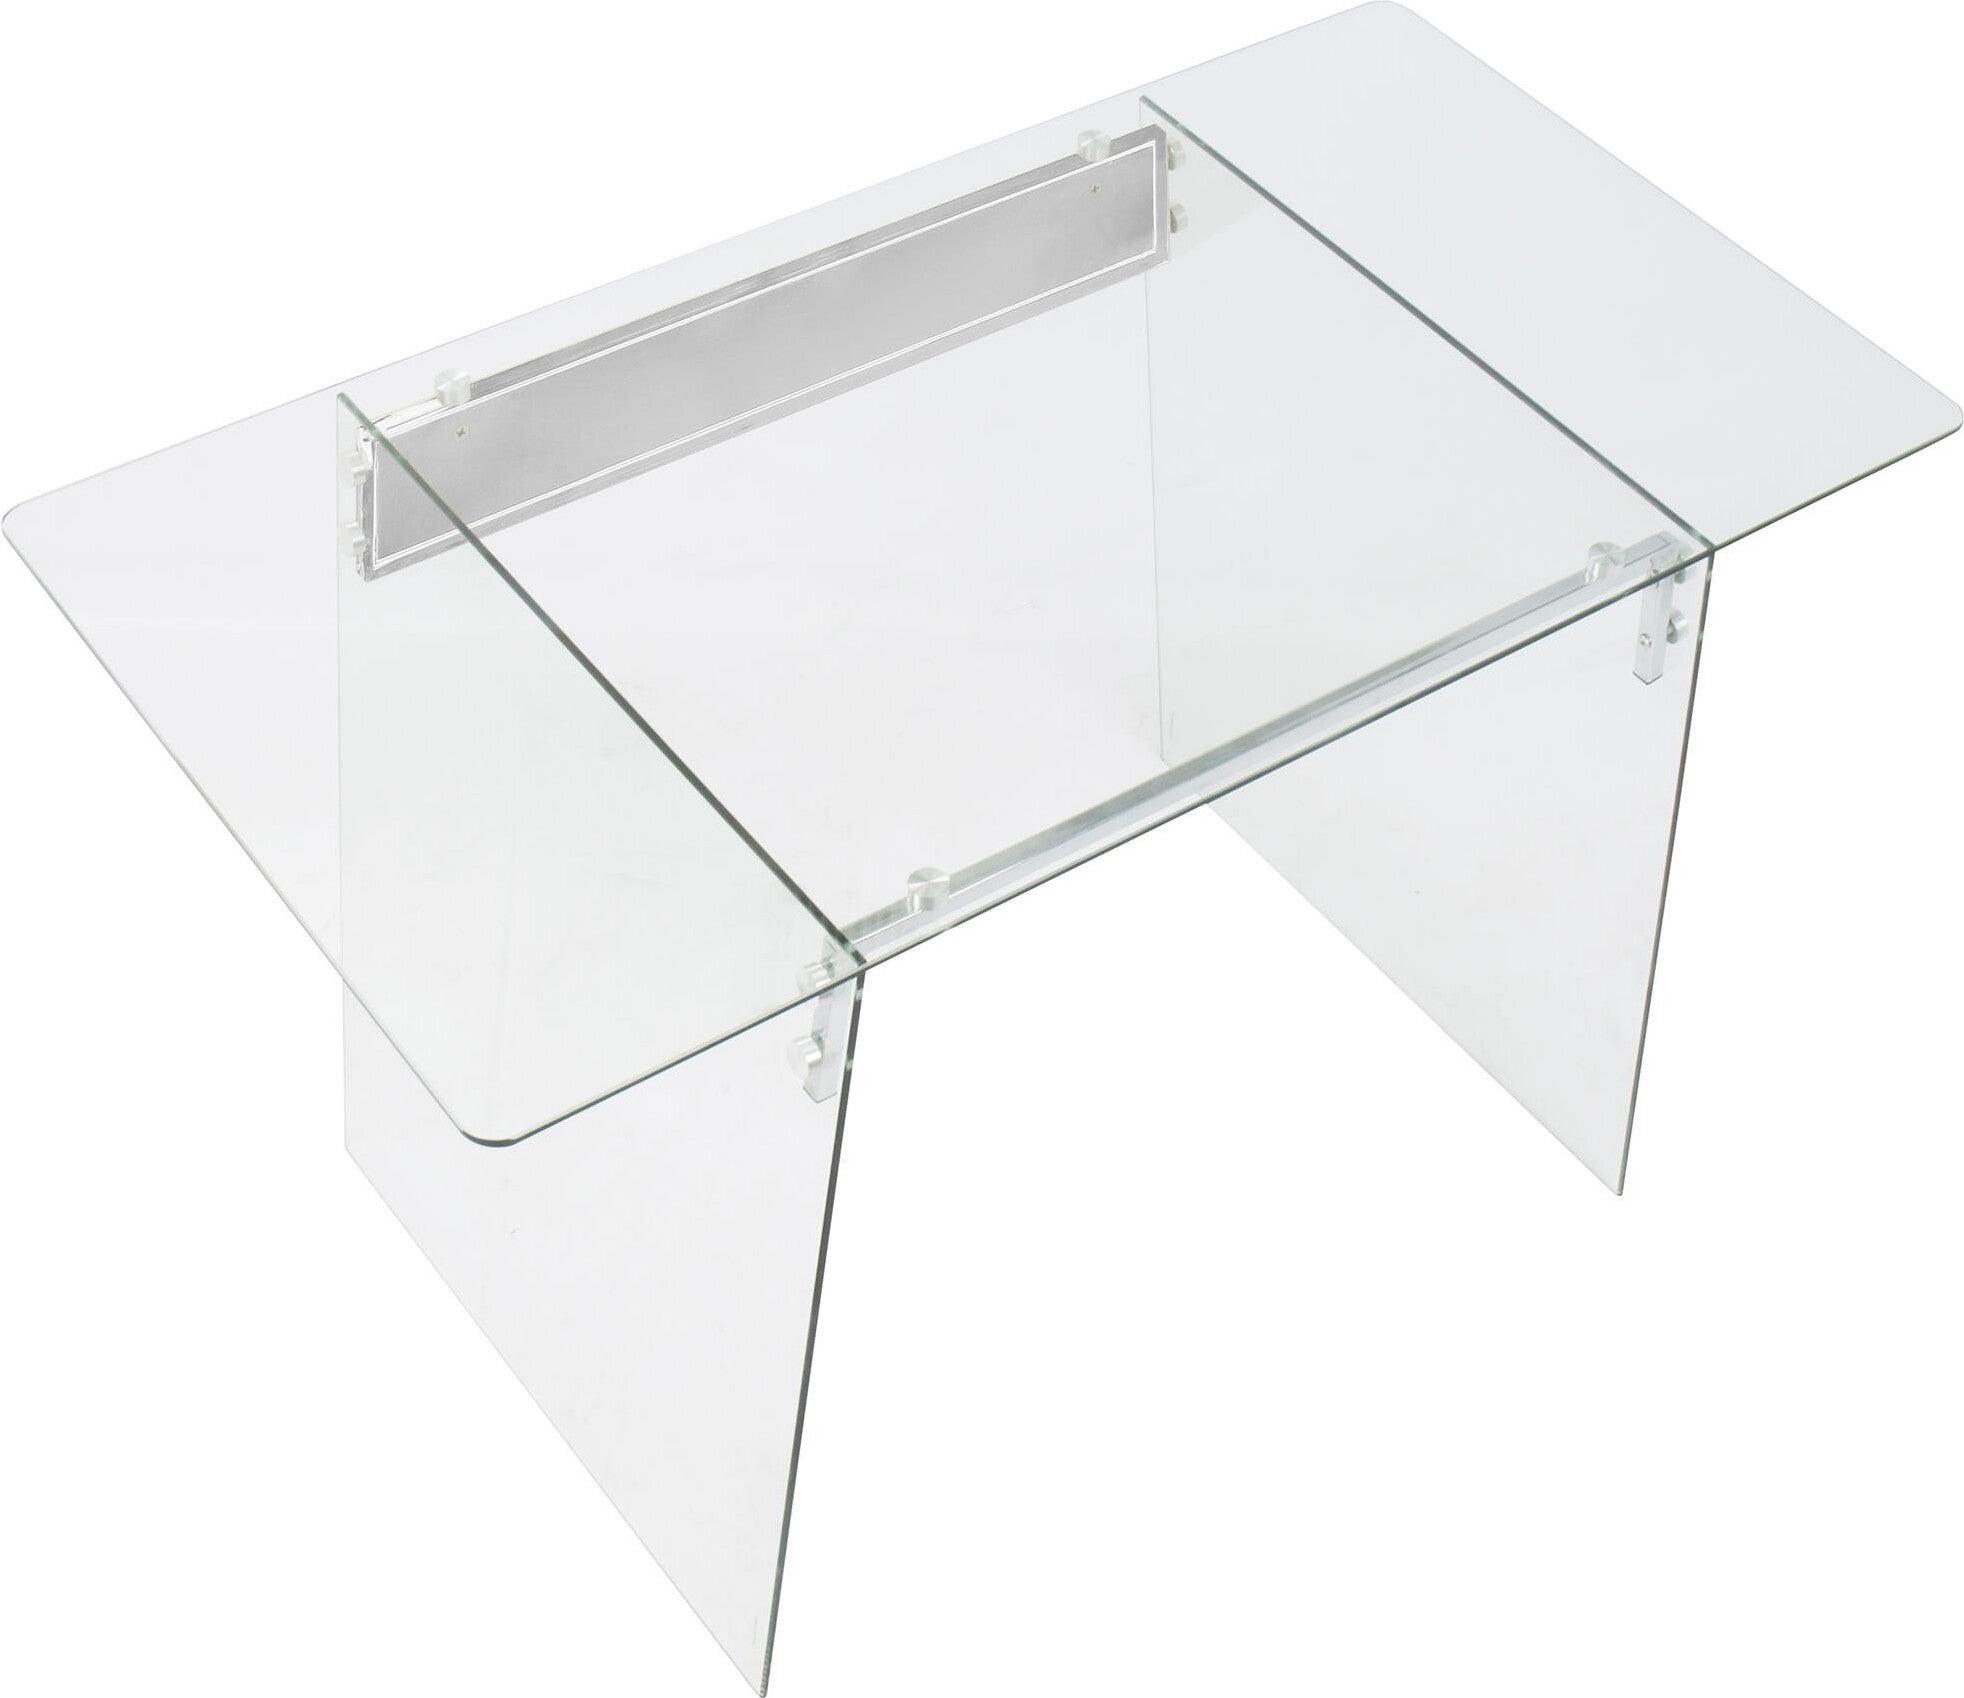 Lumisource Desks - Glacier Office Desk Clear & Chrome